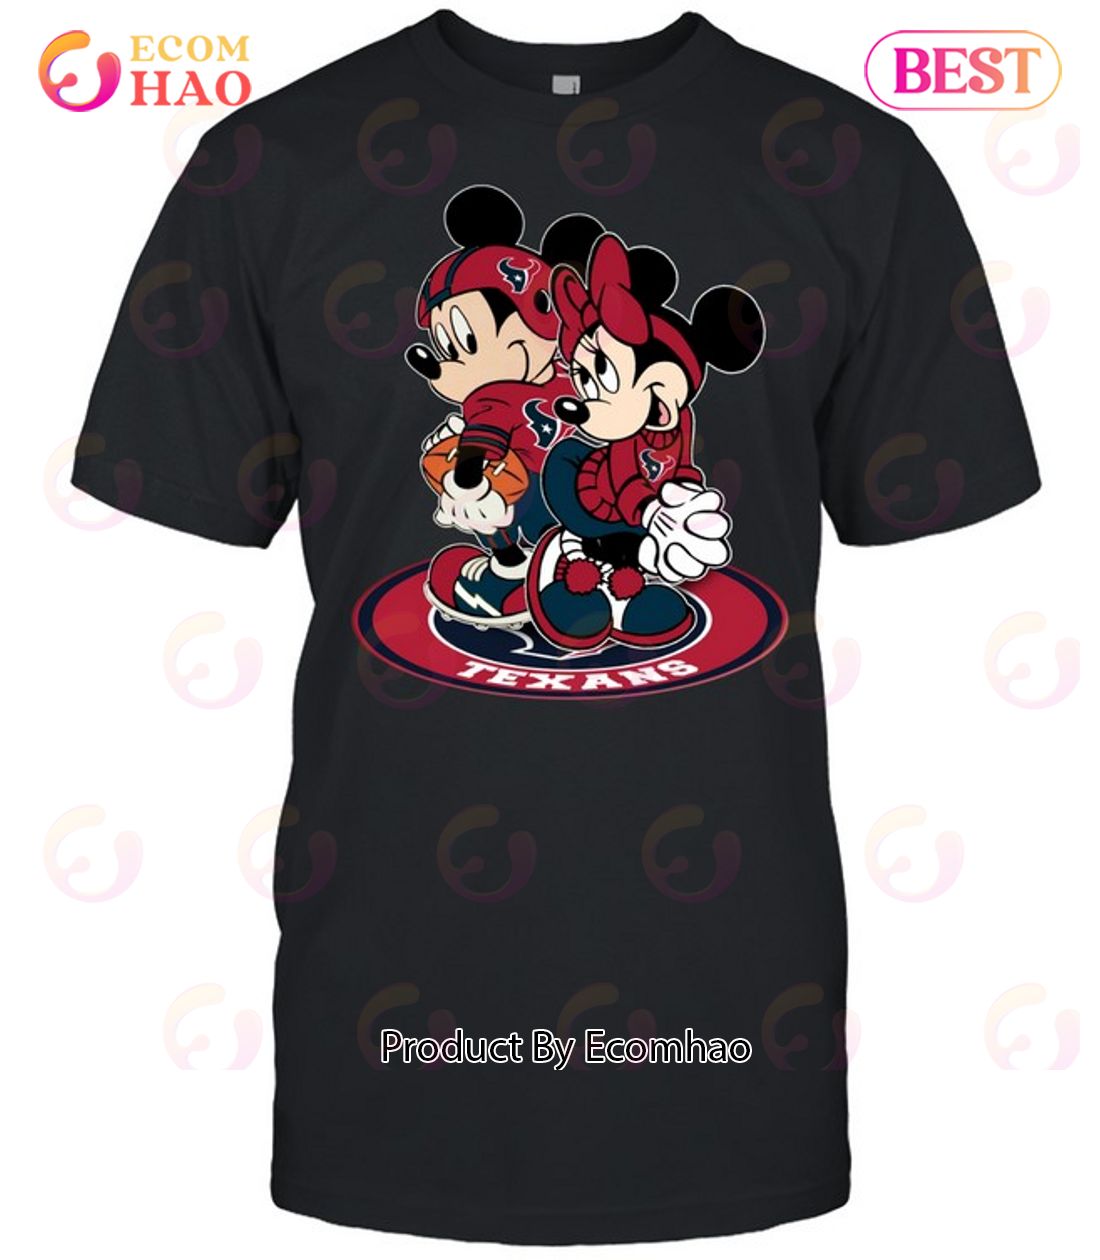 NFL Houston Texans Mickey & Minnie T-Shirt